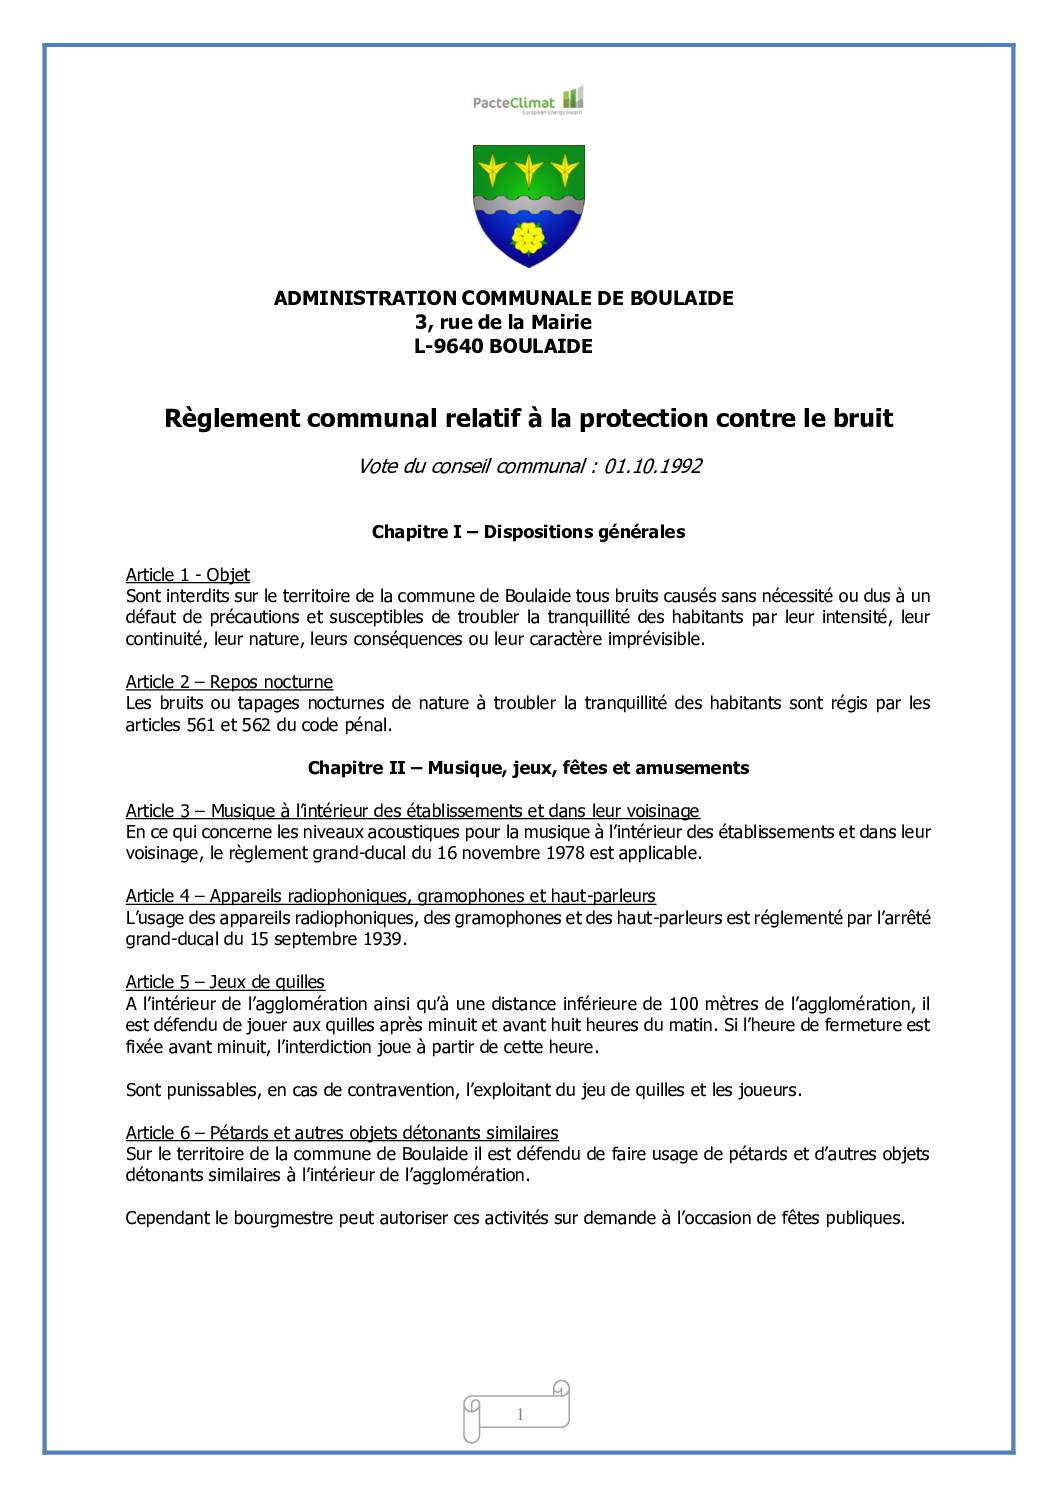 Règlement communal relatif à la protection contre le bruit du 01.10.1992